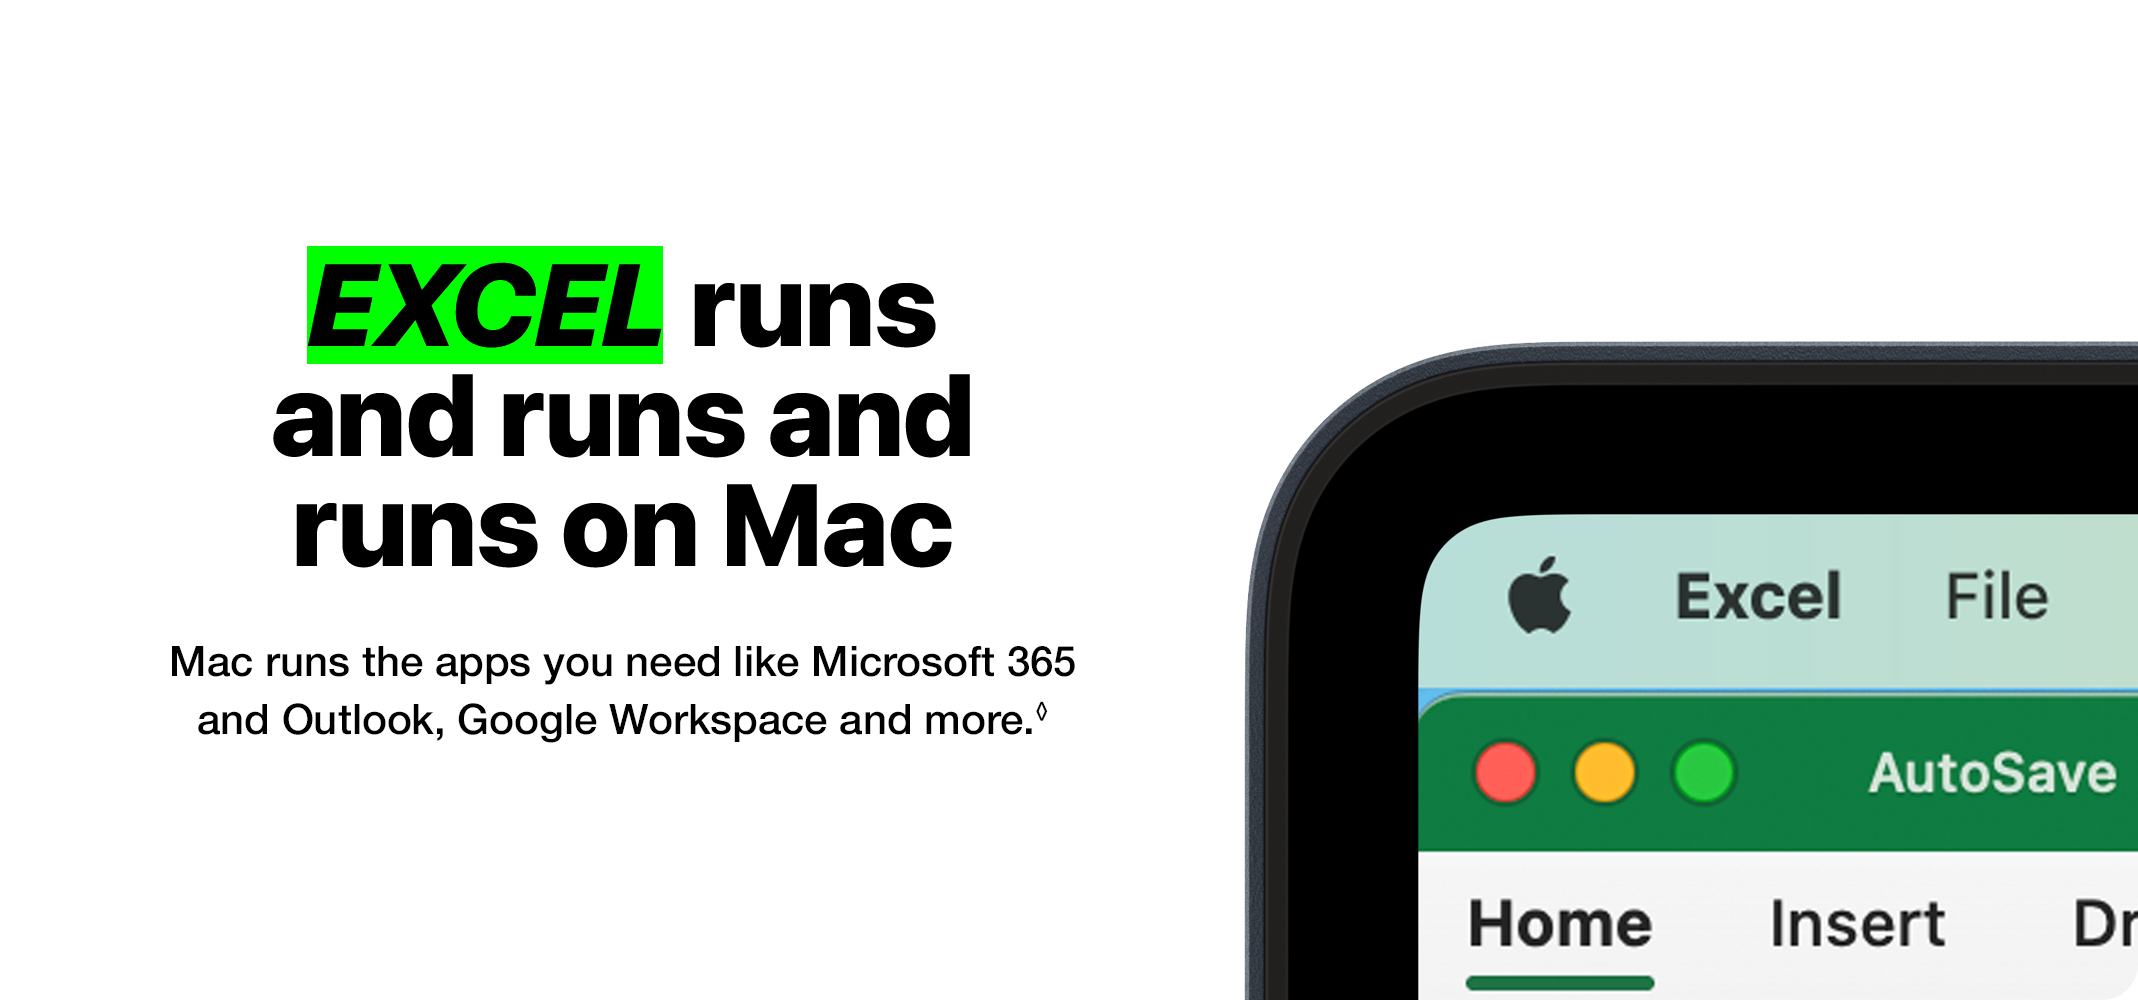 EXCEL runs and runs and runs on Mac